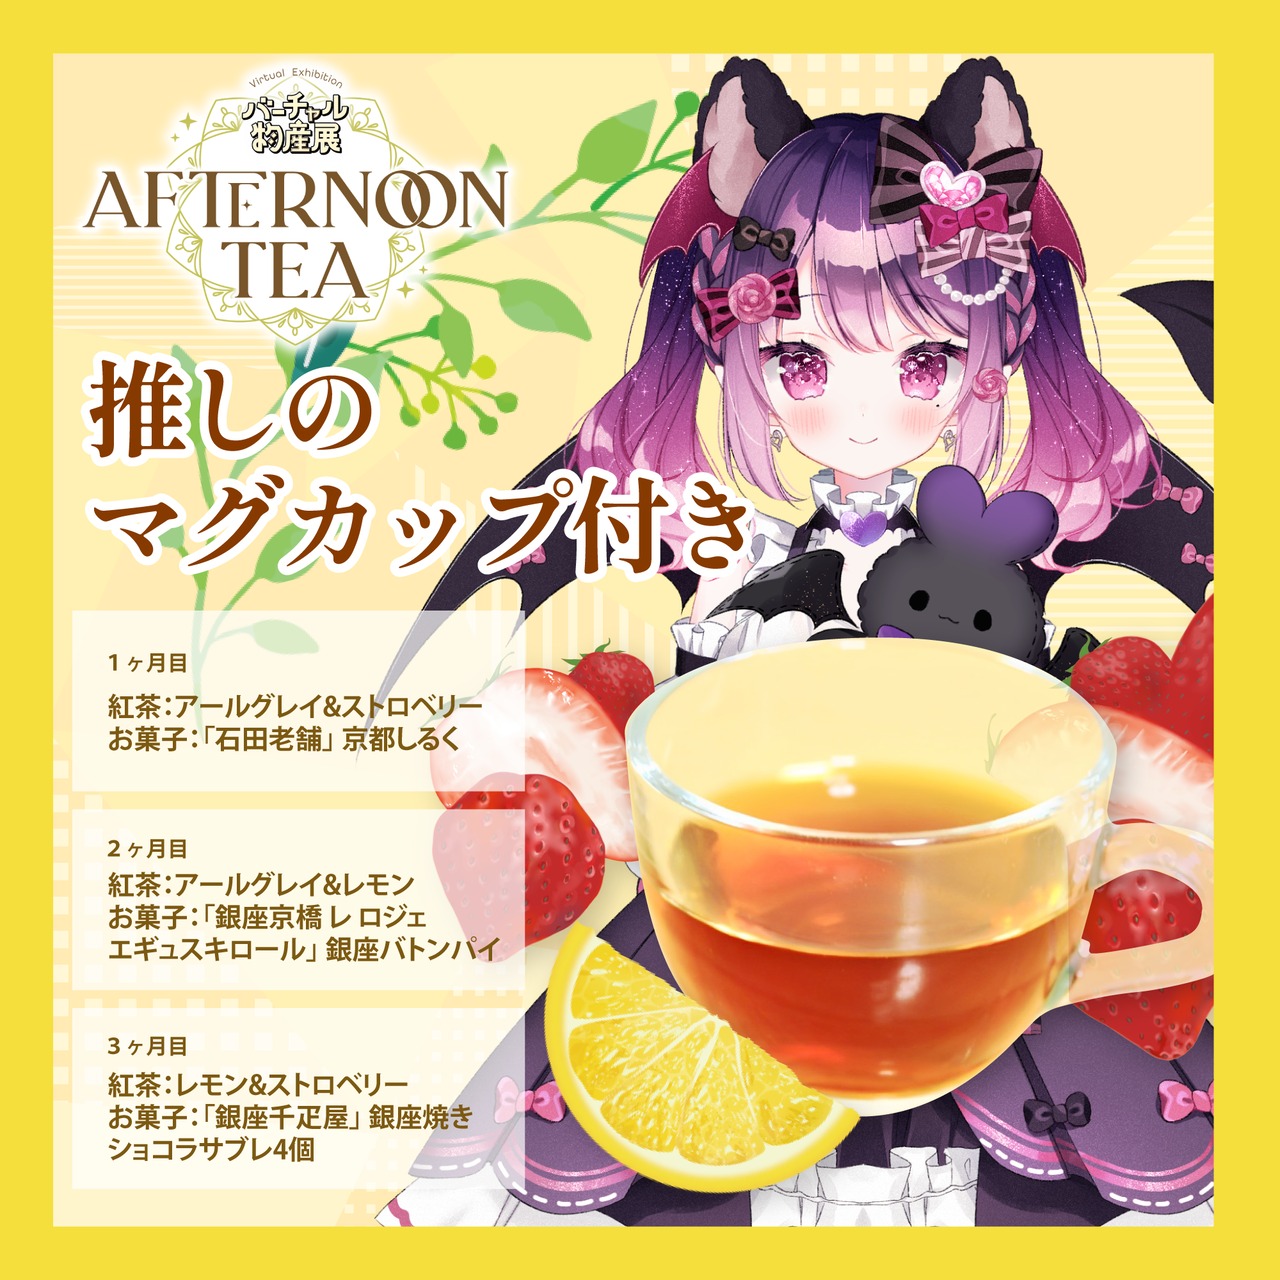 【こは太郎】バーチャル物産展 〜AFTERNOON TEA〜